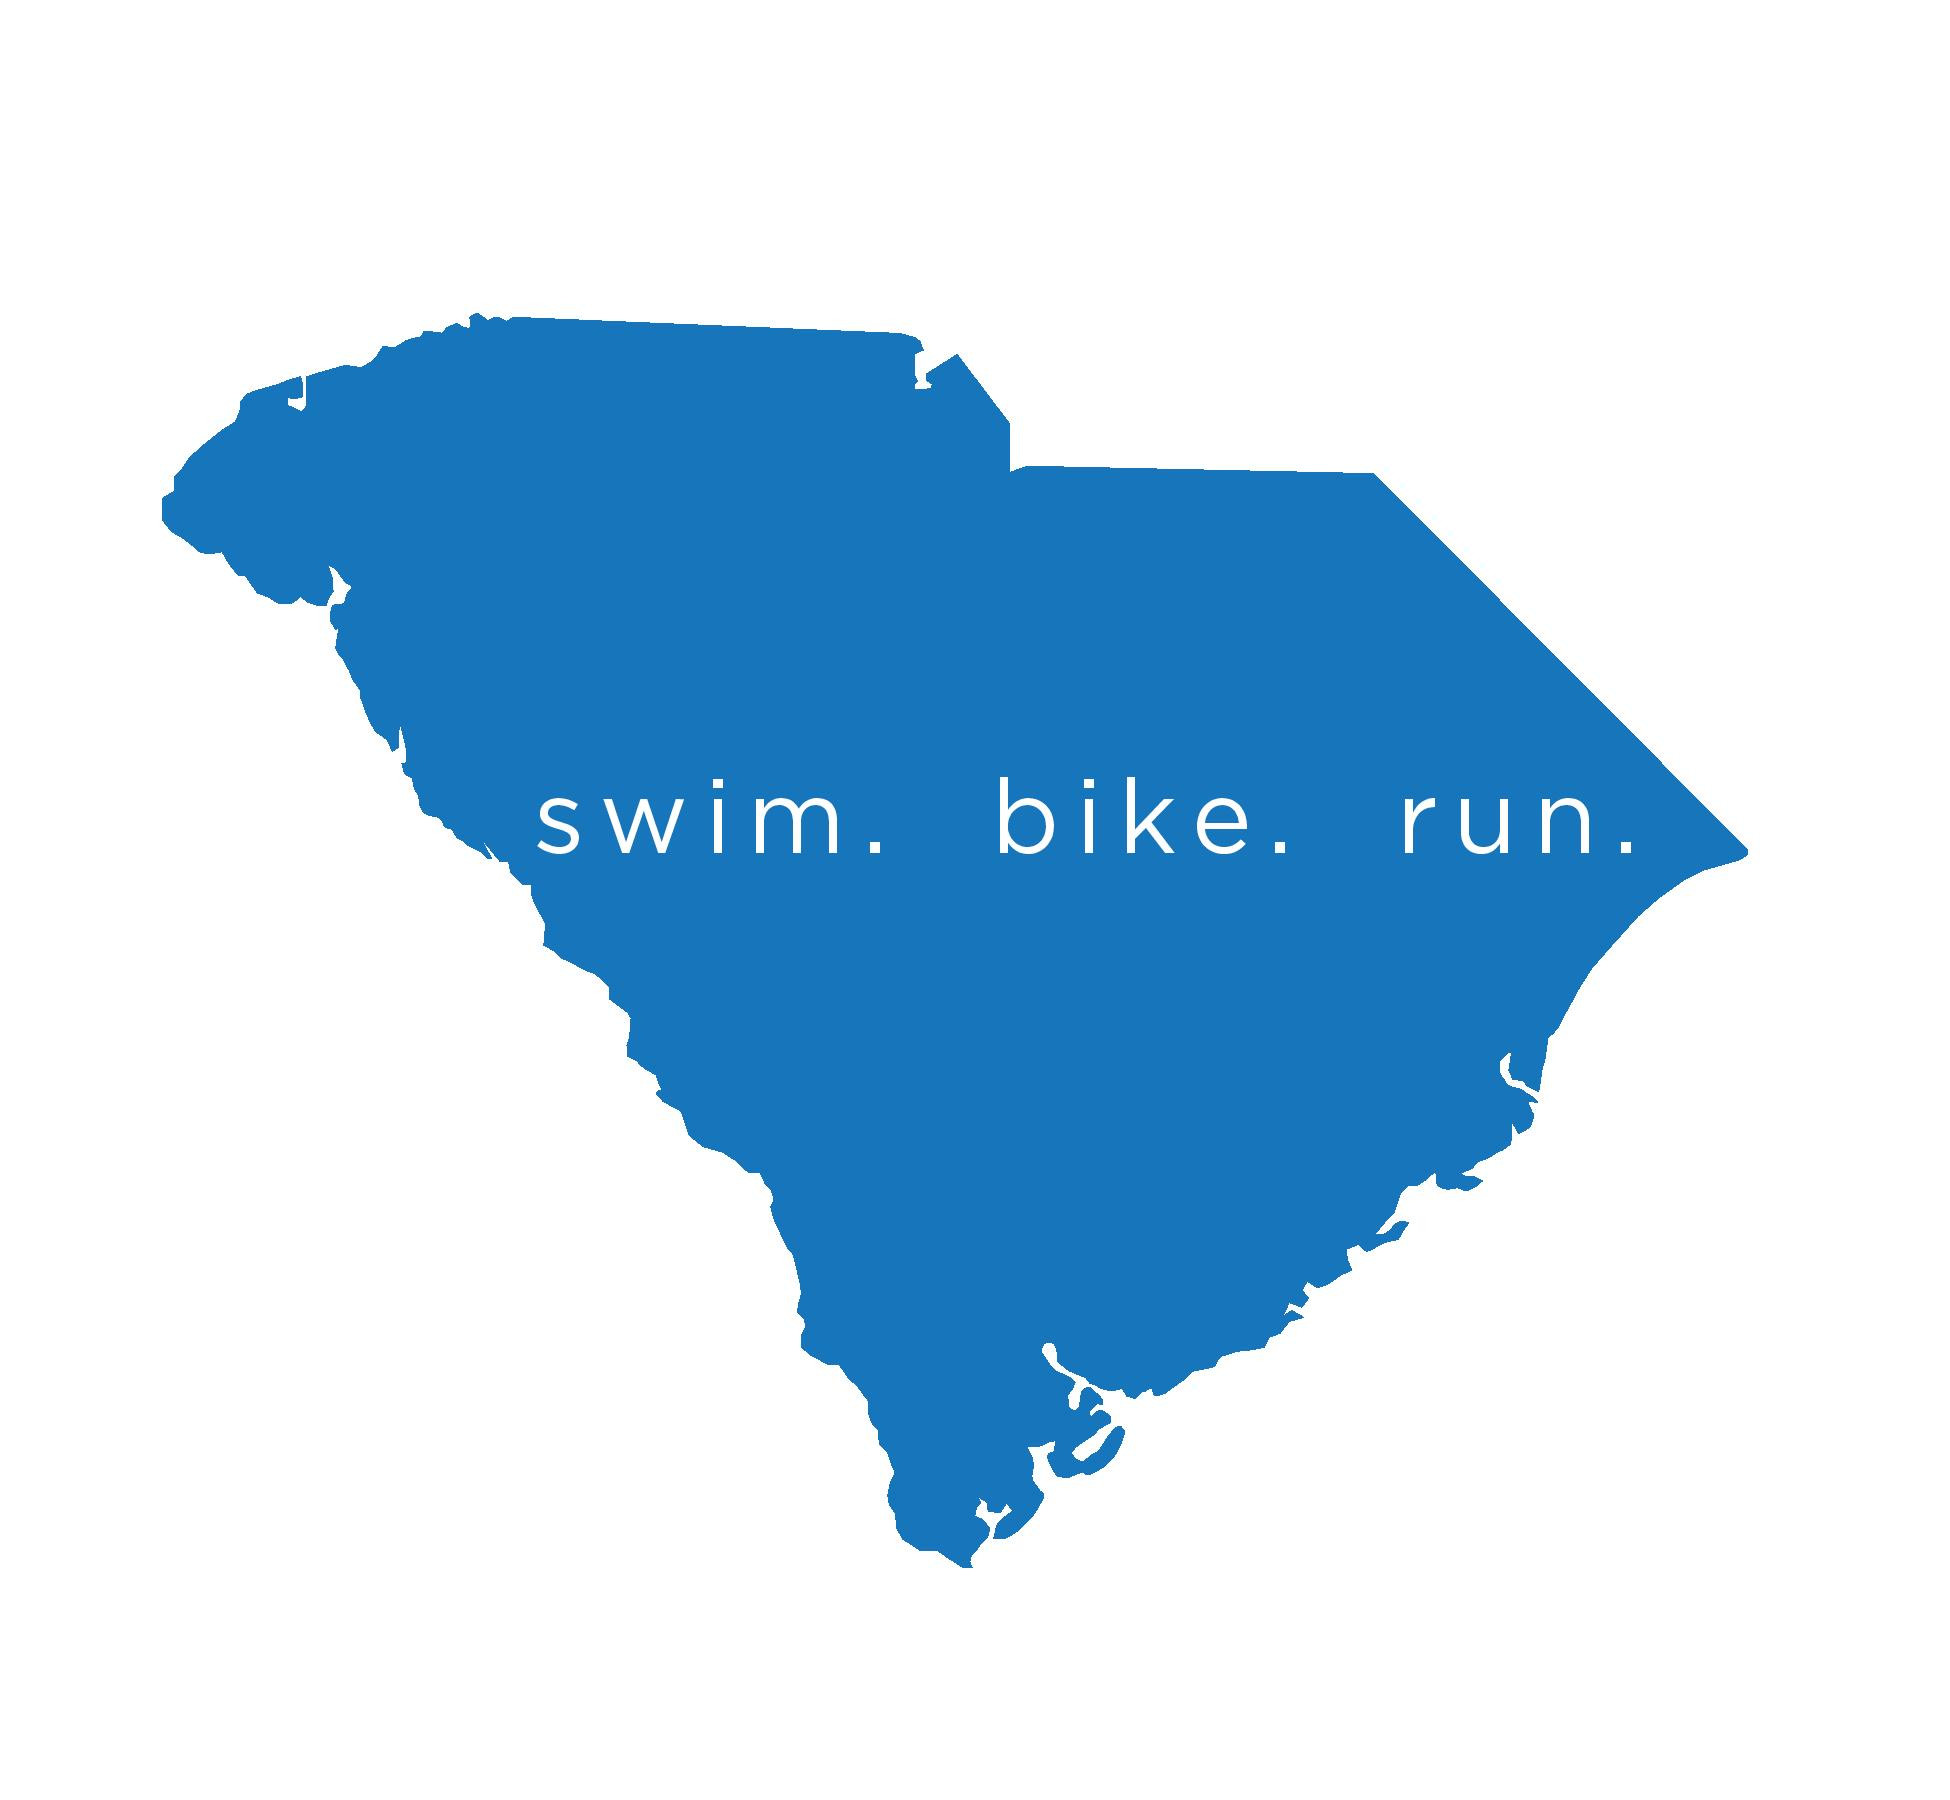 blue sc outline words swim.bike.run. in the center